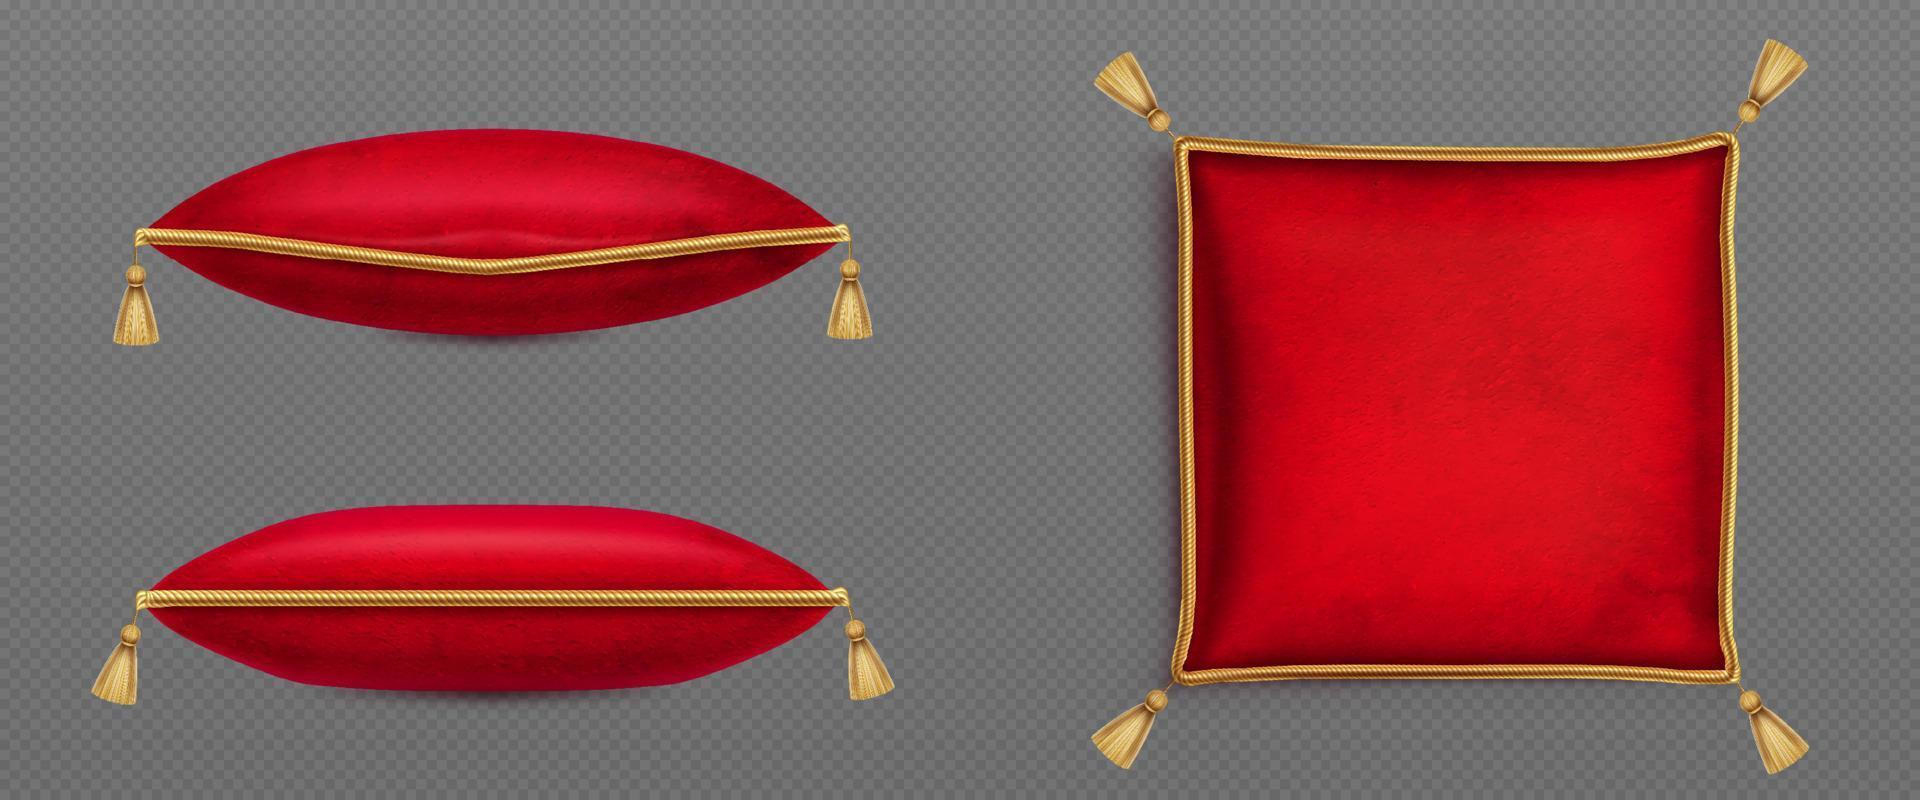 rosso velluto cuscini decorato oro cordone nappe vettore